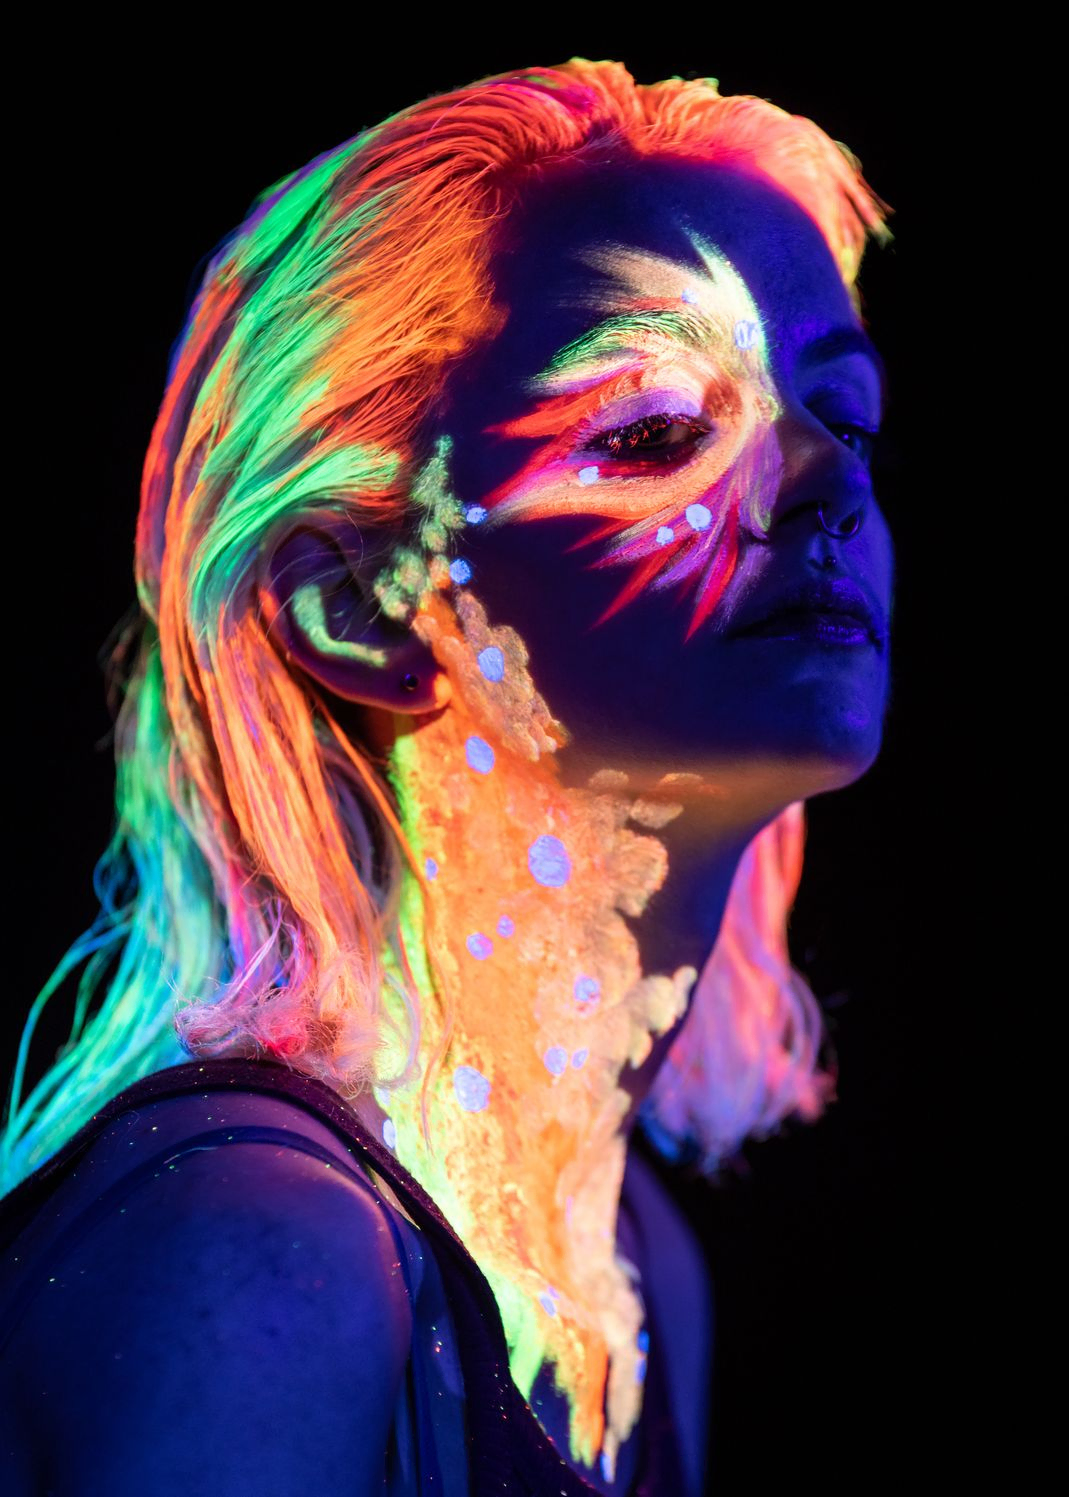 Neon colour face paint under UV light